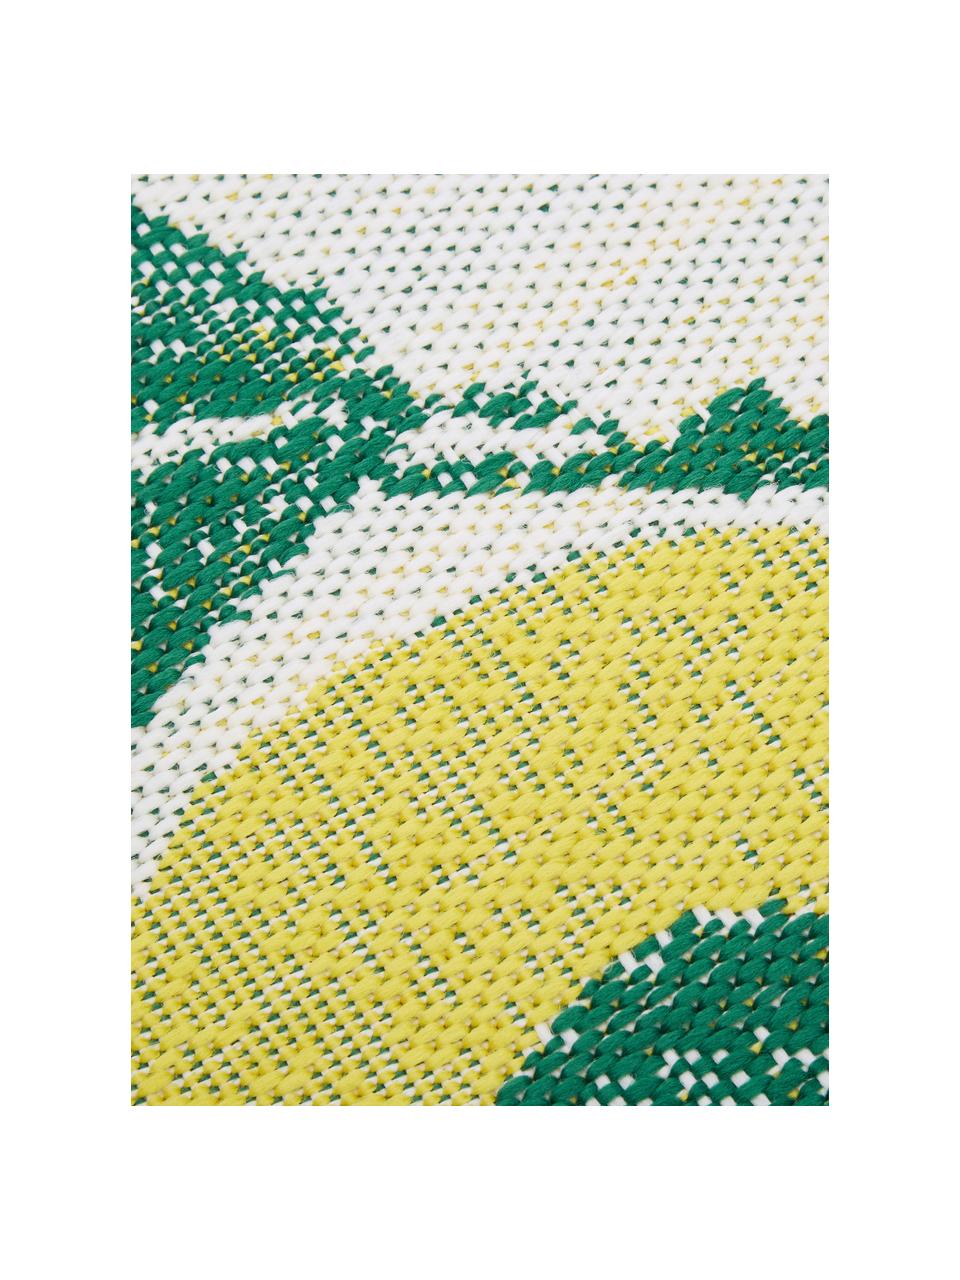 In- & Outdoor-Teppich Limonia mit Zitronen Print, 86% Polypropylen, 14% Polyester, Cremeweiss, Gelb, Grün, B 160 x L 230 cm (Grösse M)